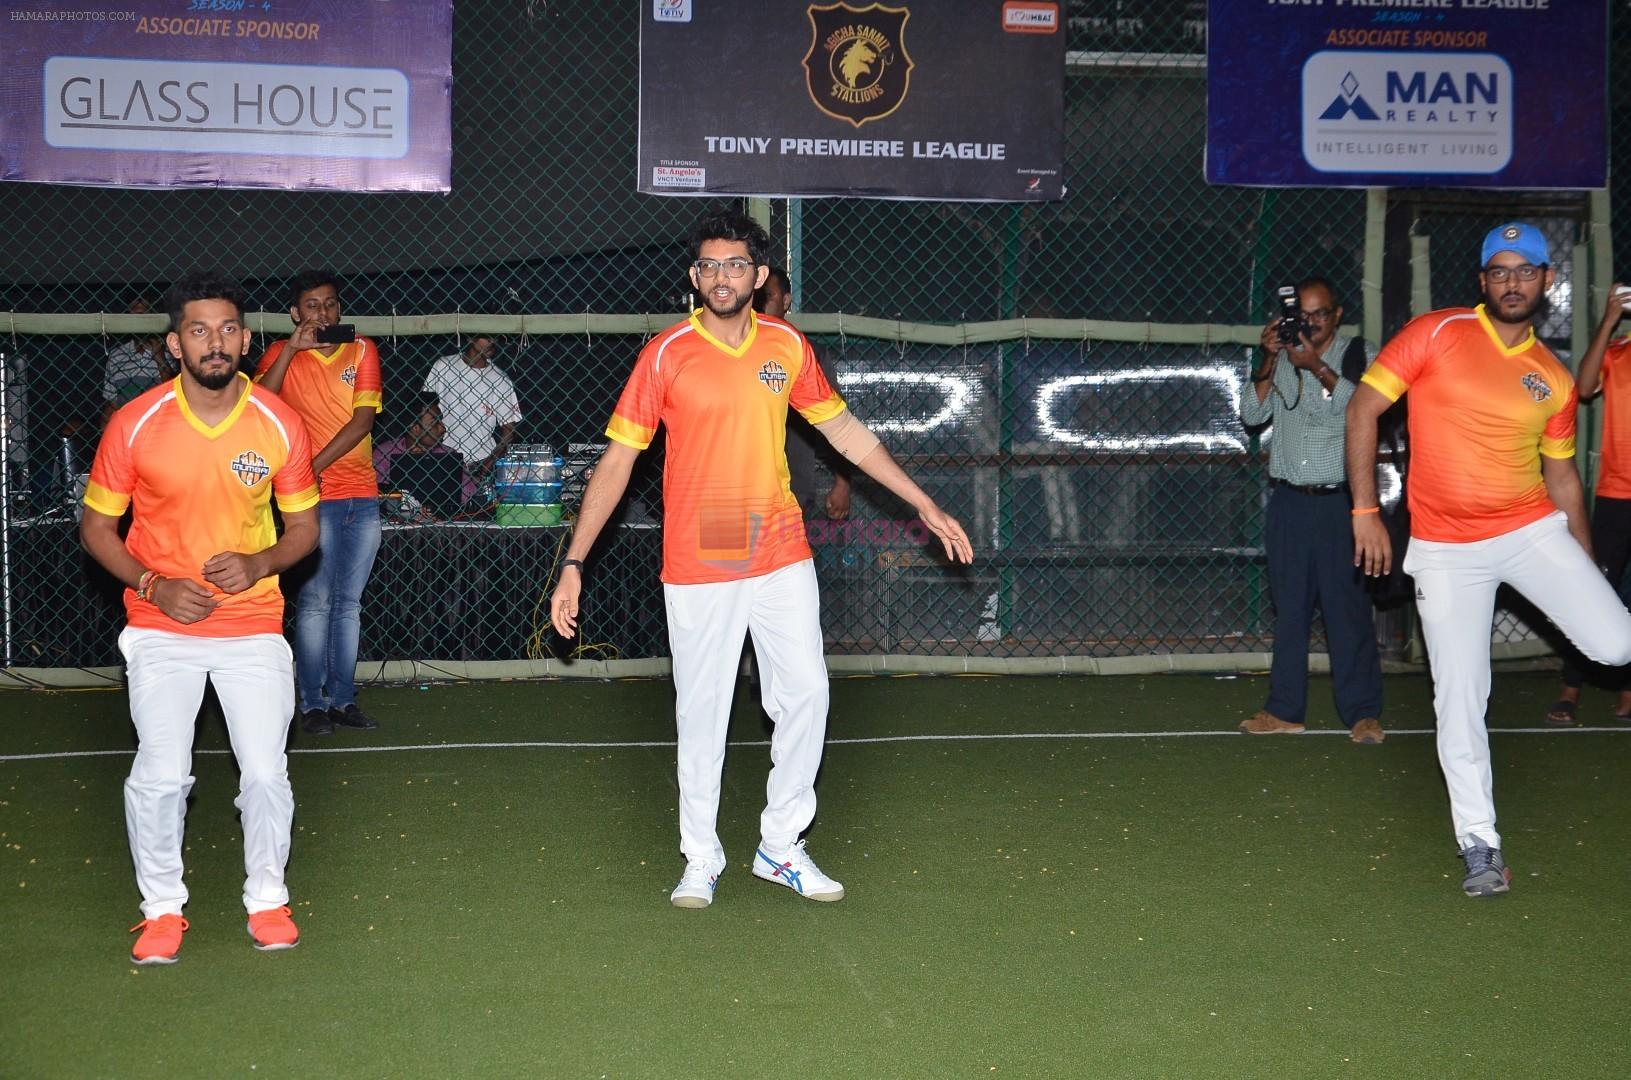 Aditya Thackeray at Yuva Mumbai VS Mumbai Heroes Cricket Match on 4th Nov 2017